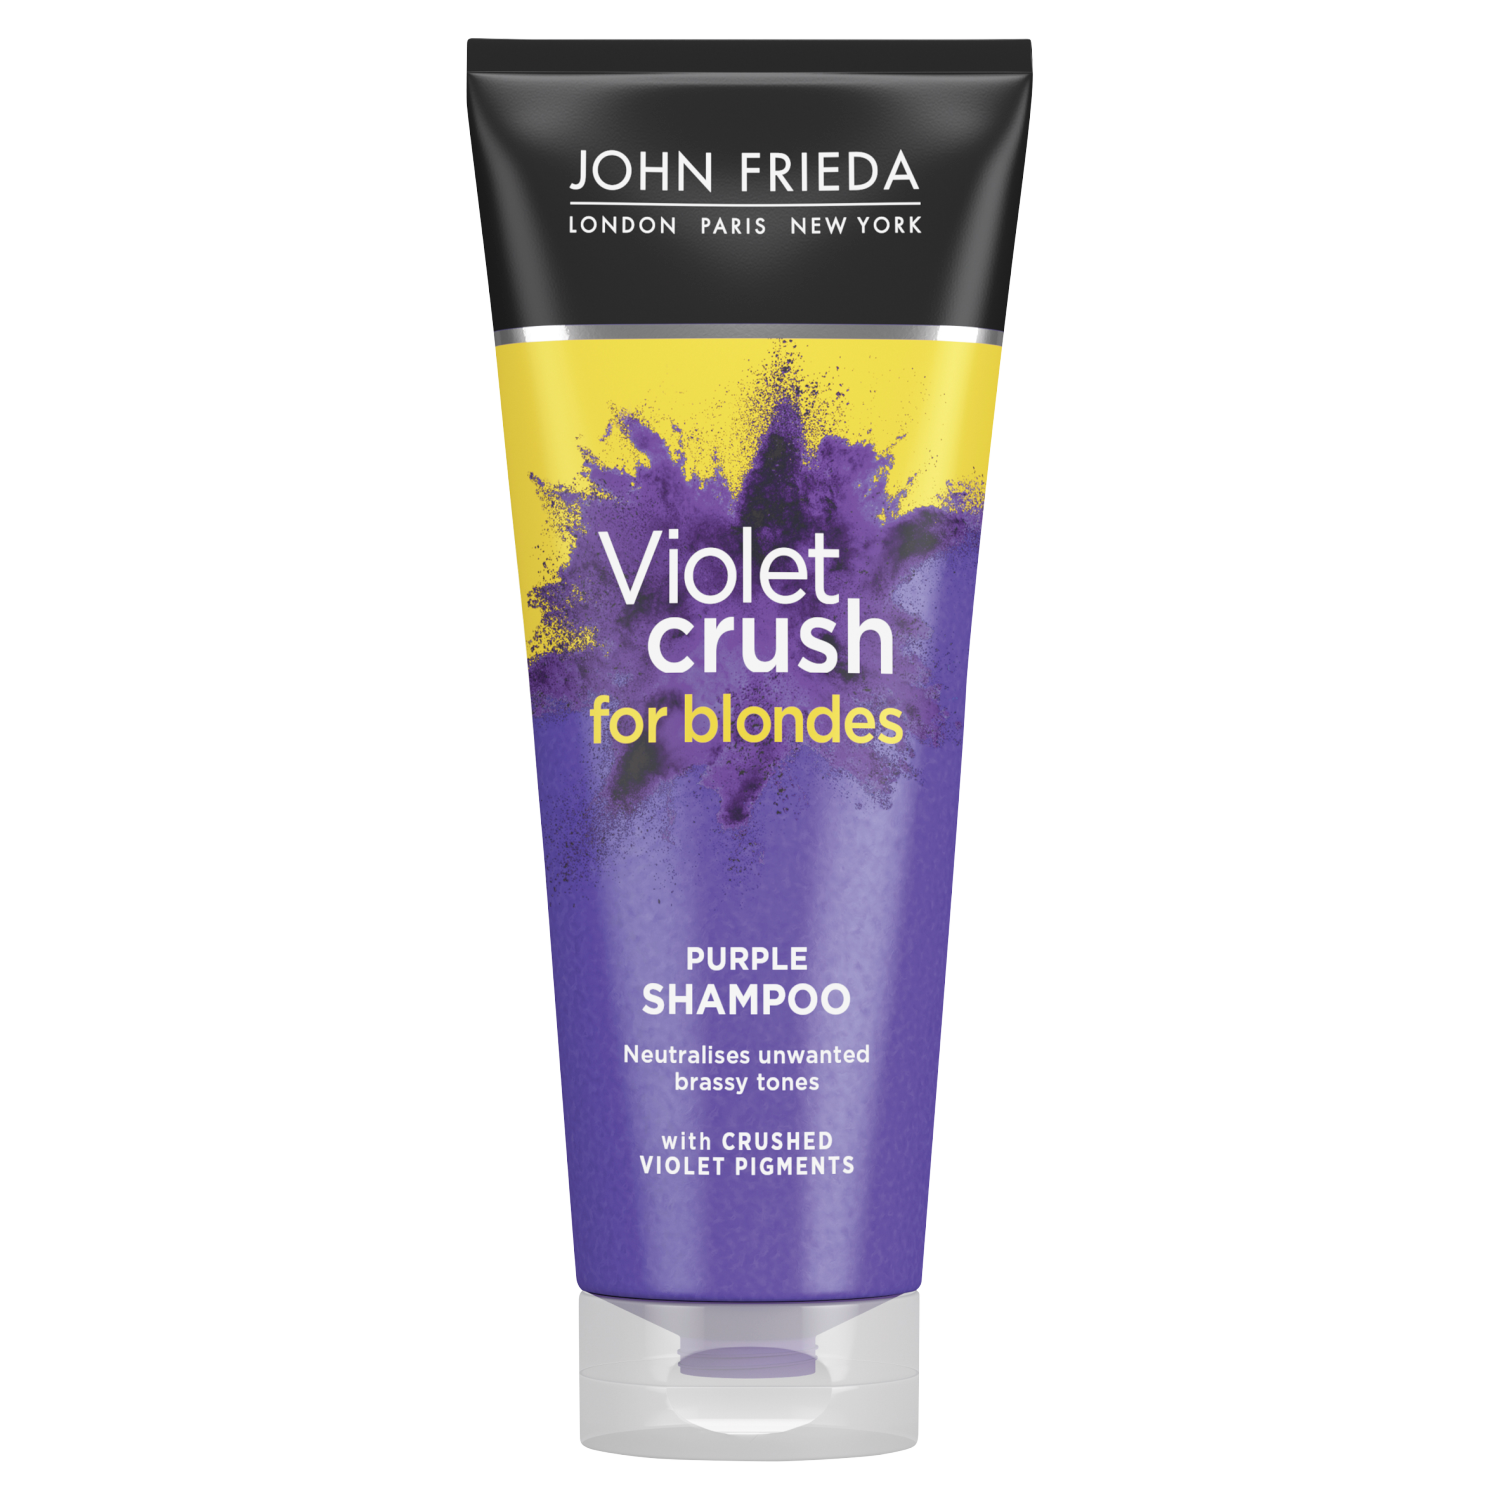 John Frieda Violet Crush шампунь для волос с фиолетовыми пигментами против желтизны, 250 мл john frieda шампунь violet crush for blondes purple 250 мл